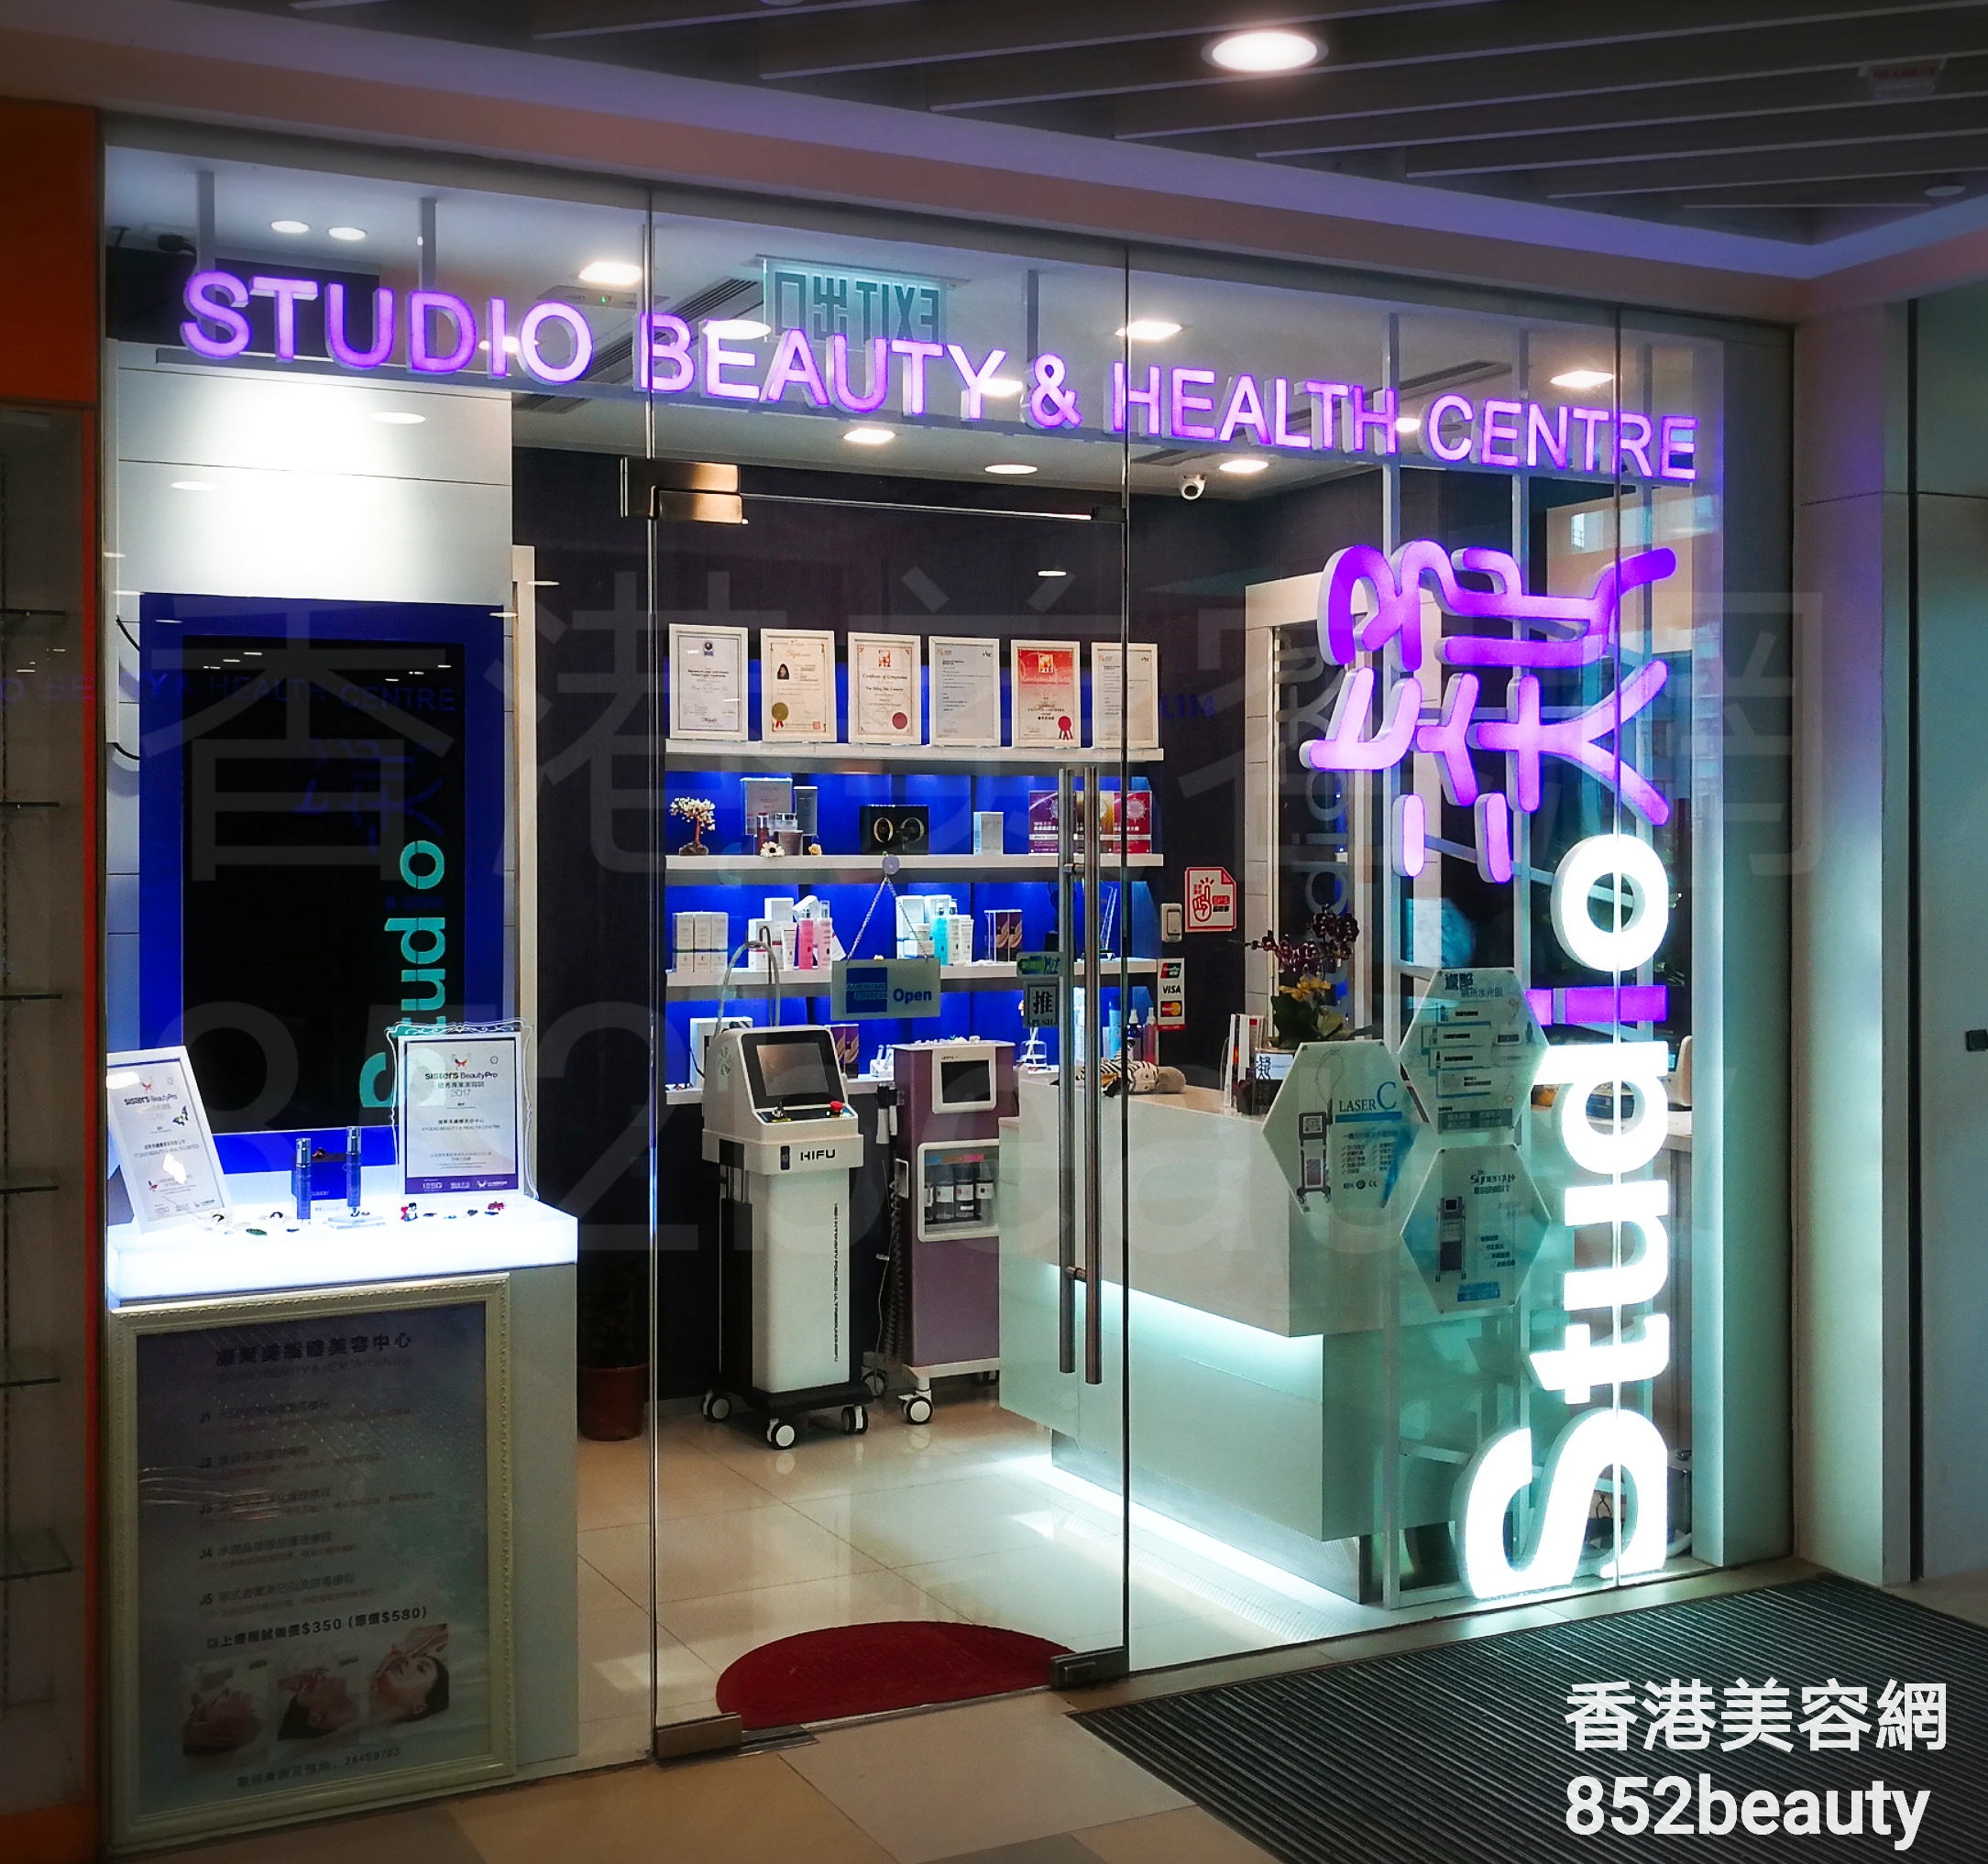 香港美容網 Hong Kong Beauty Salon 美容院 / 美容師: STUDIO BEAUTY & HEALTH CENTRE 凝聚美纖體美容中心 (天盛店)